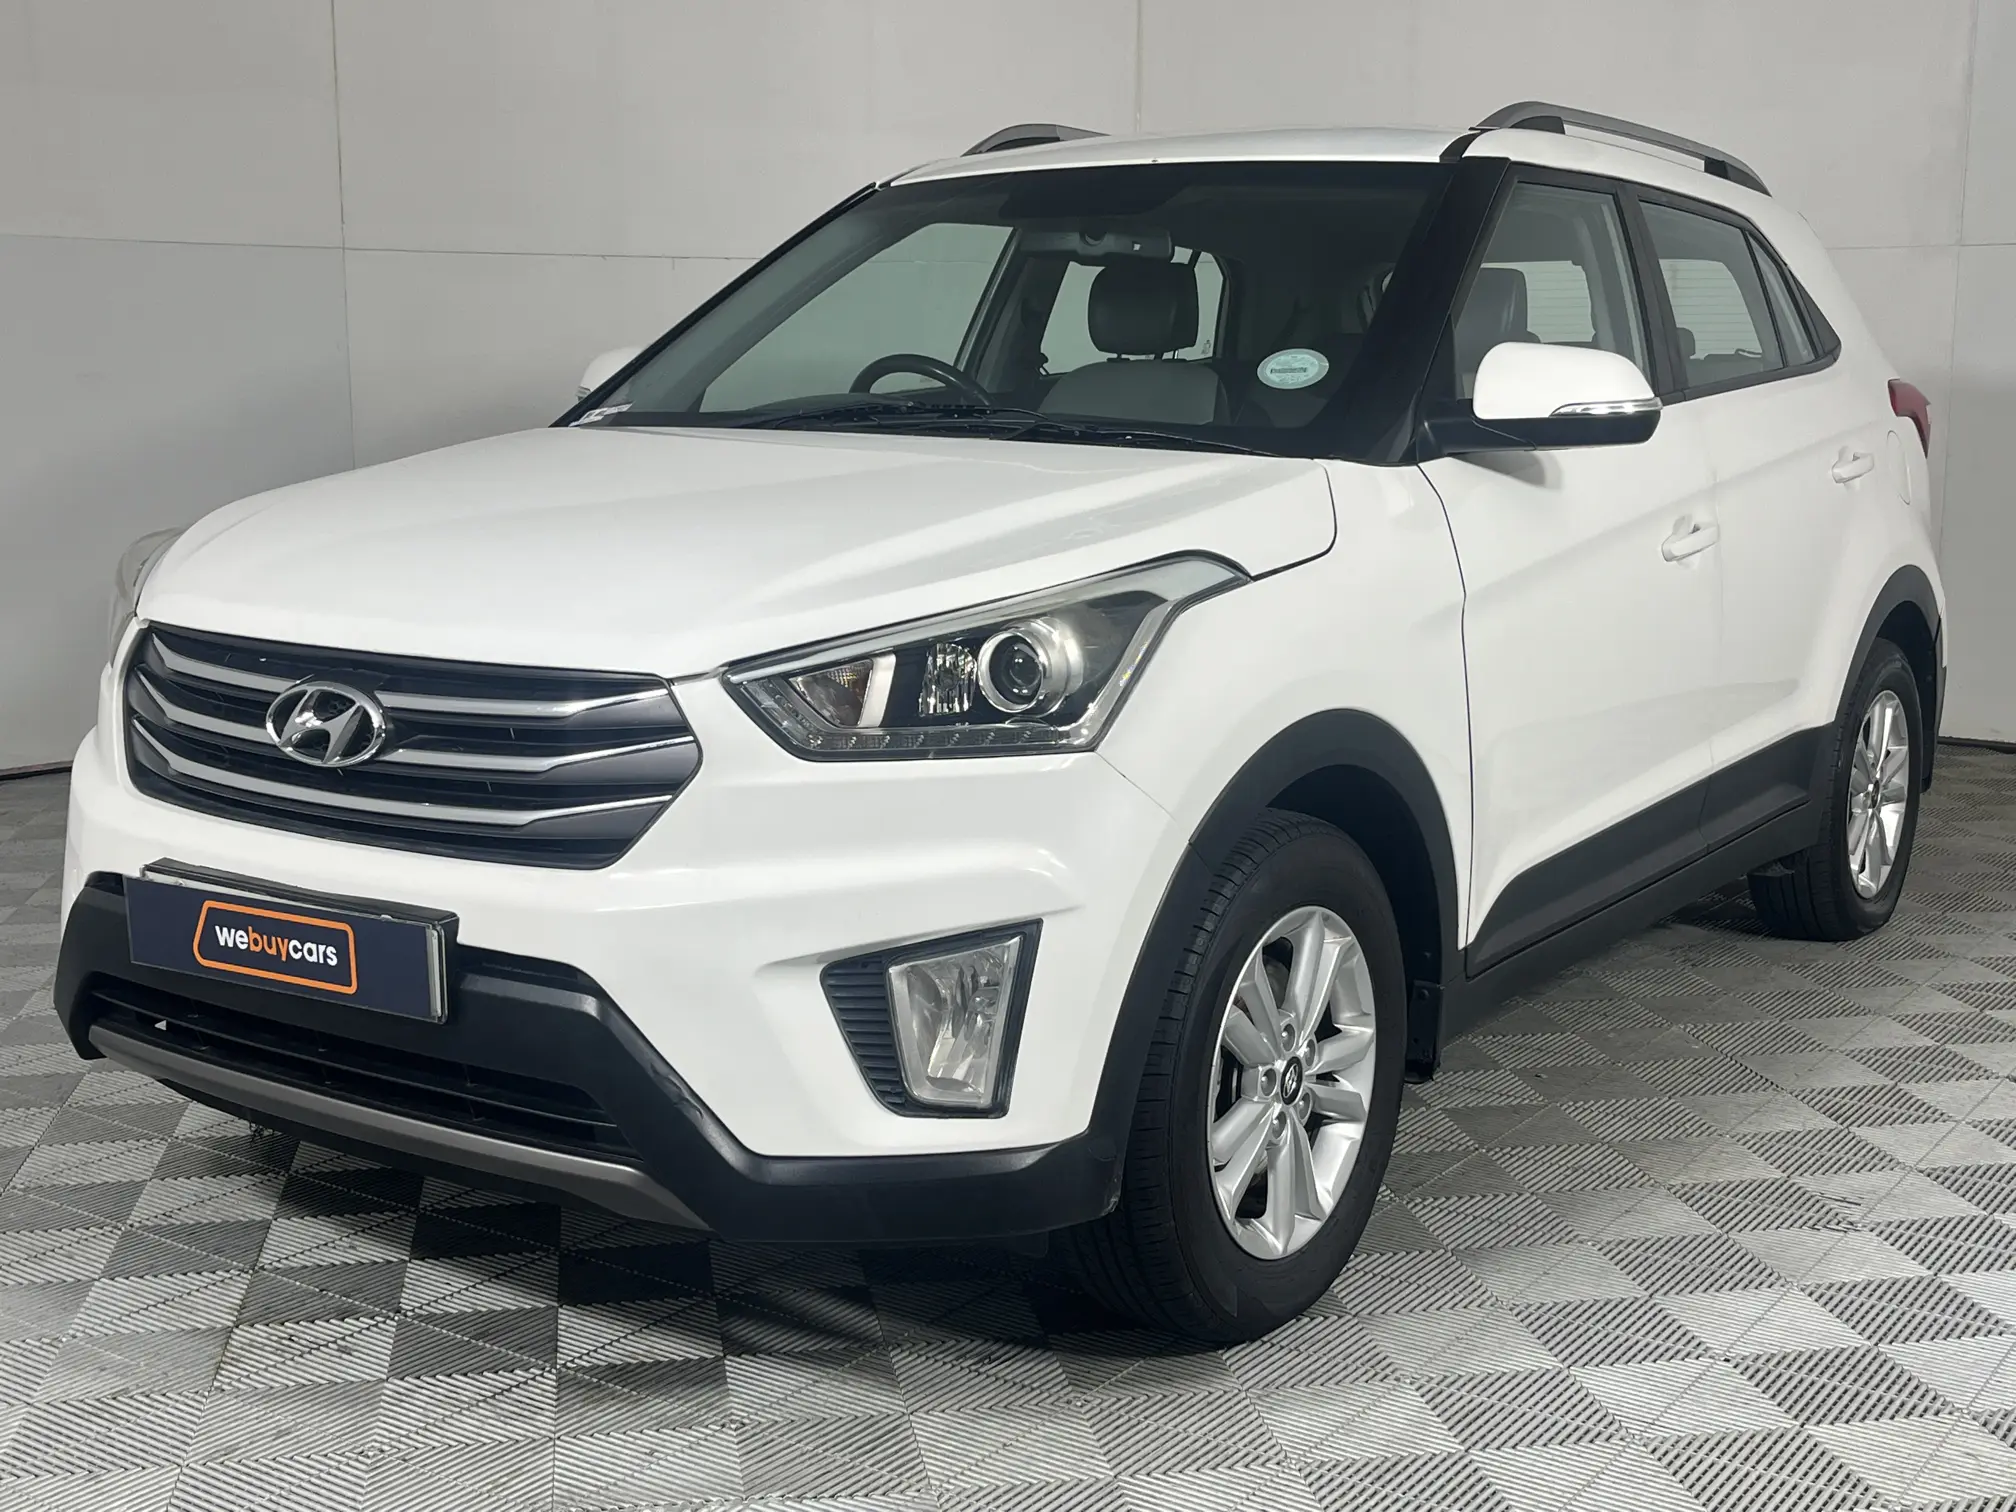 2018 Hyundai Creta 1.6 Executive